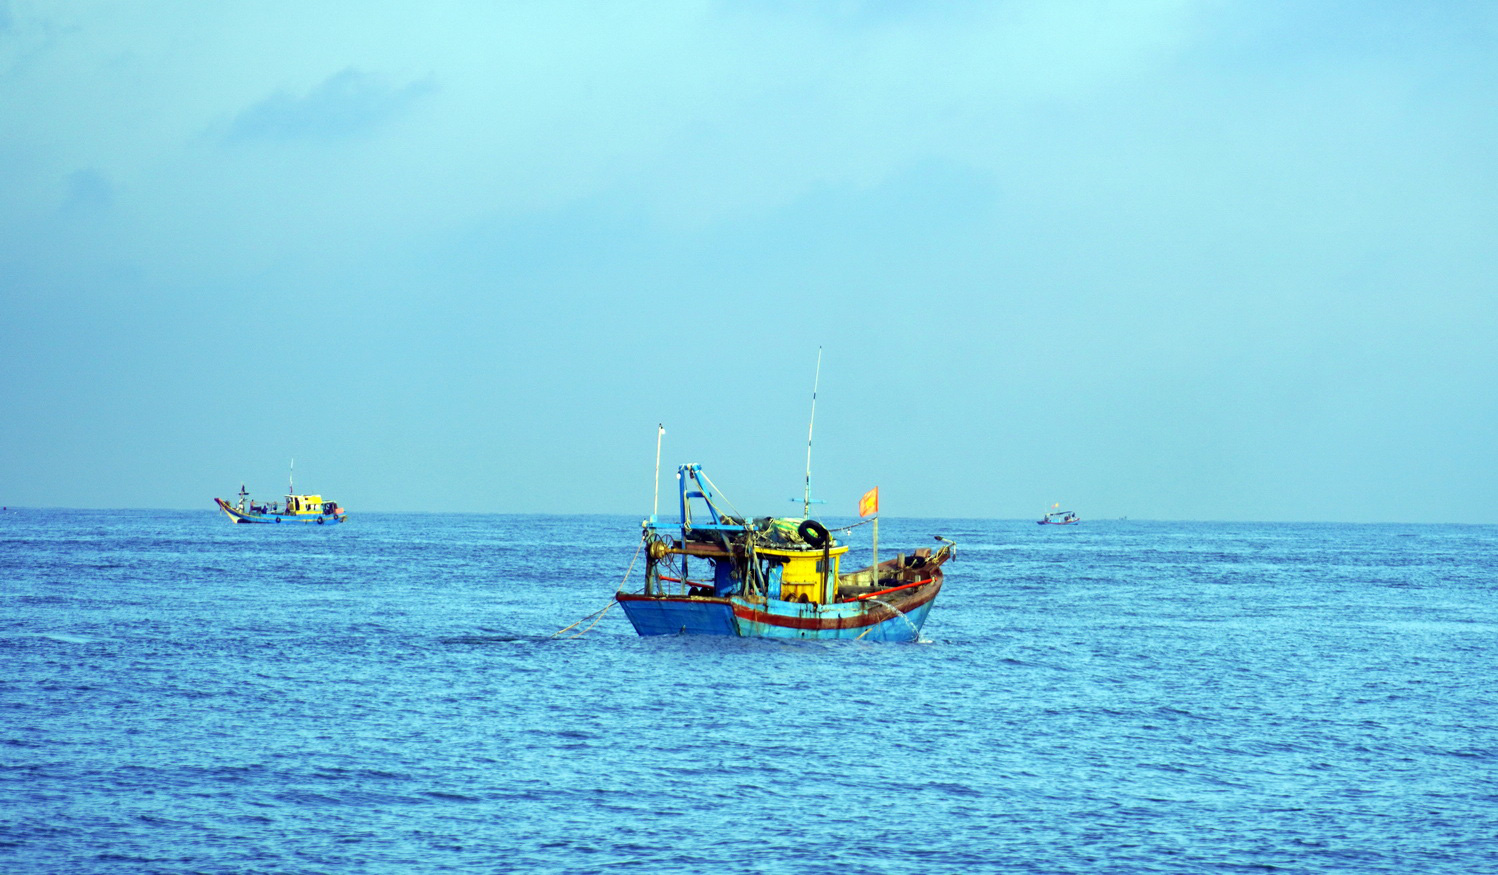 Tàu cá nhỏ đánh bắt cá gần bờ ở biển Vũng Tàu - Ảnh: ĐÔNG HÀ 